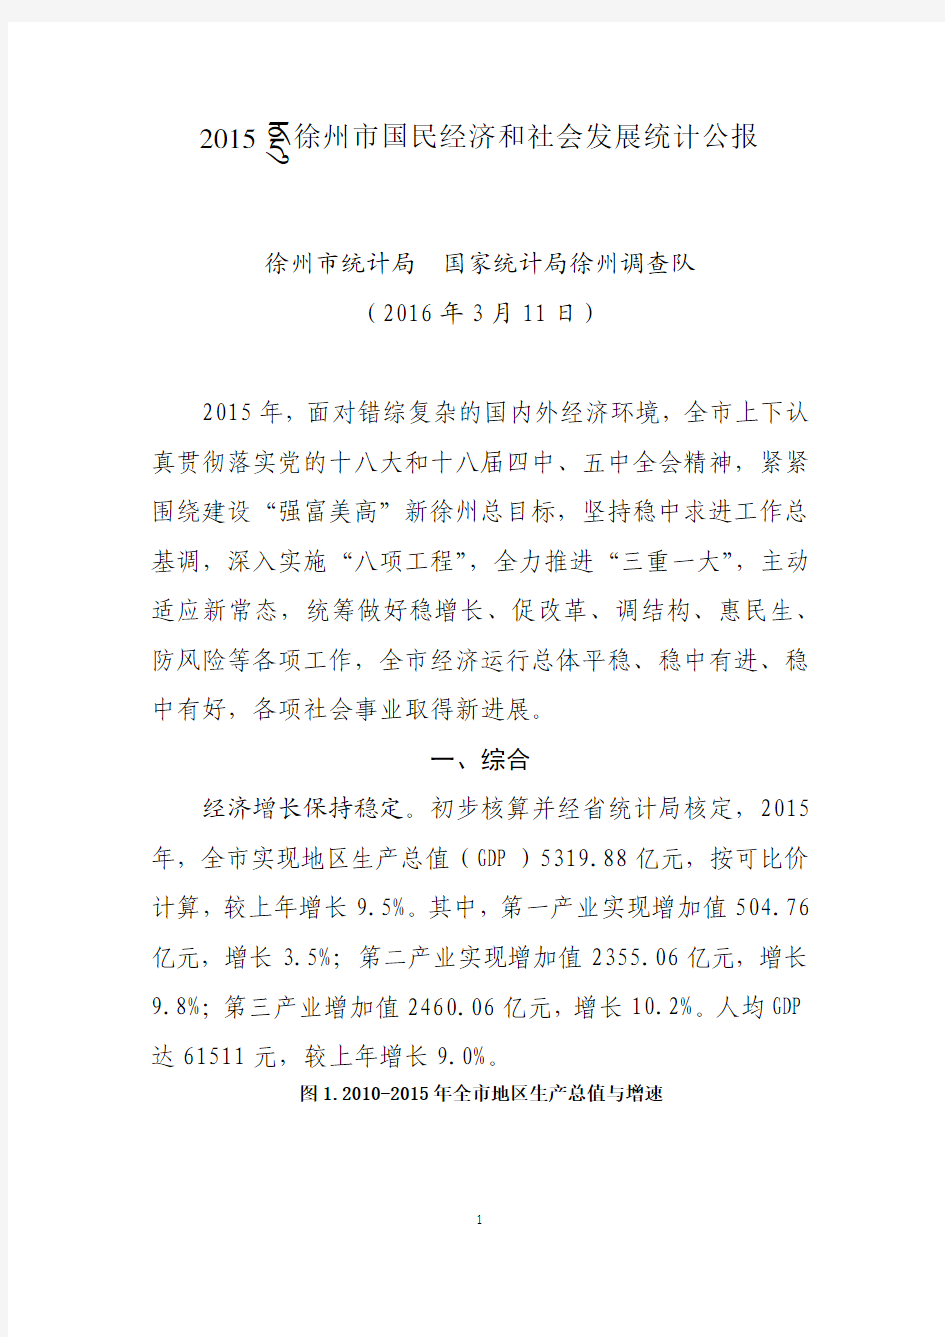 2015年徐州市经济社会发展统计公报(03_16报社校对终稿)